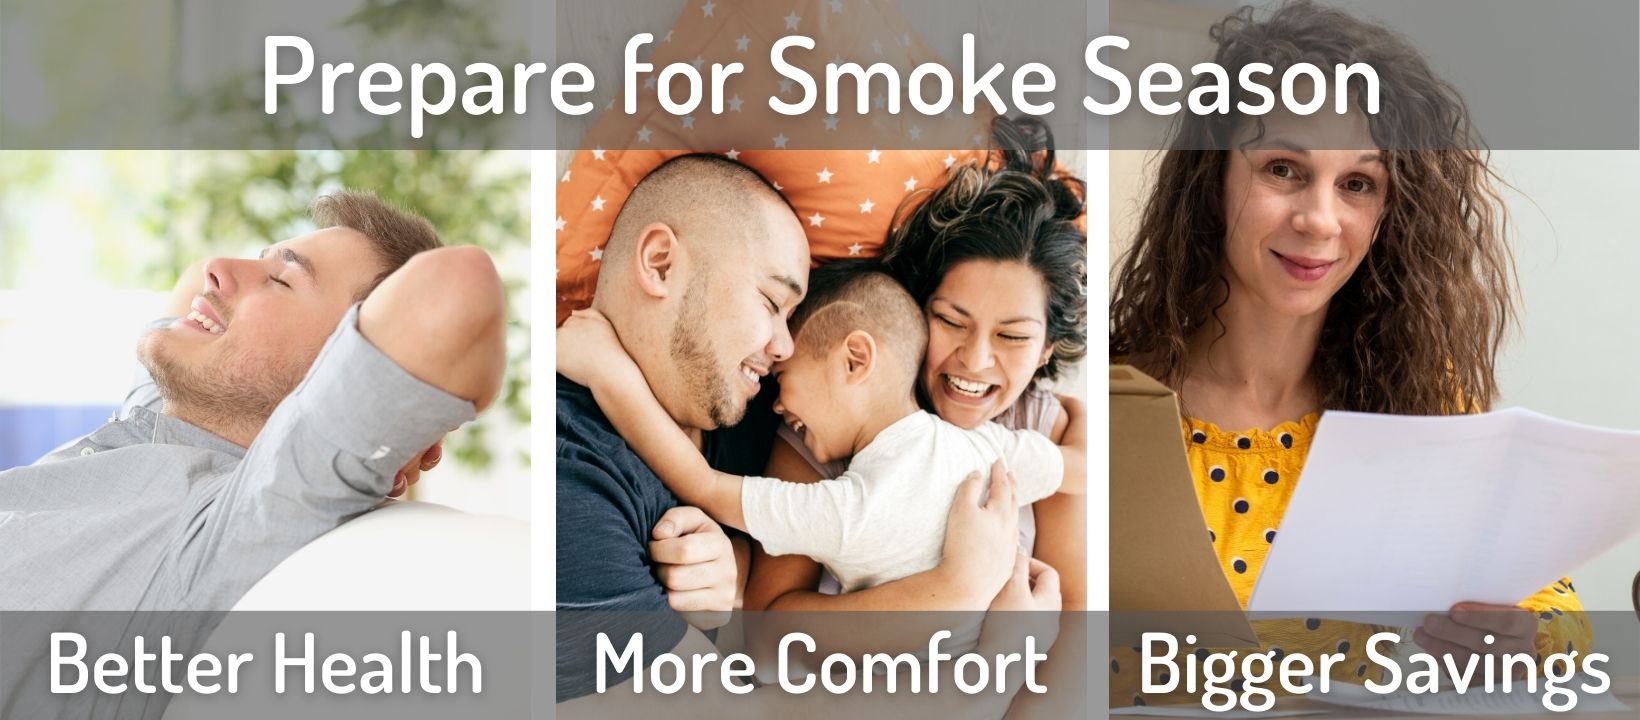 Prepare for smoke season: better health, more comfort, bigger savings